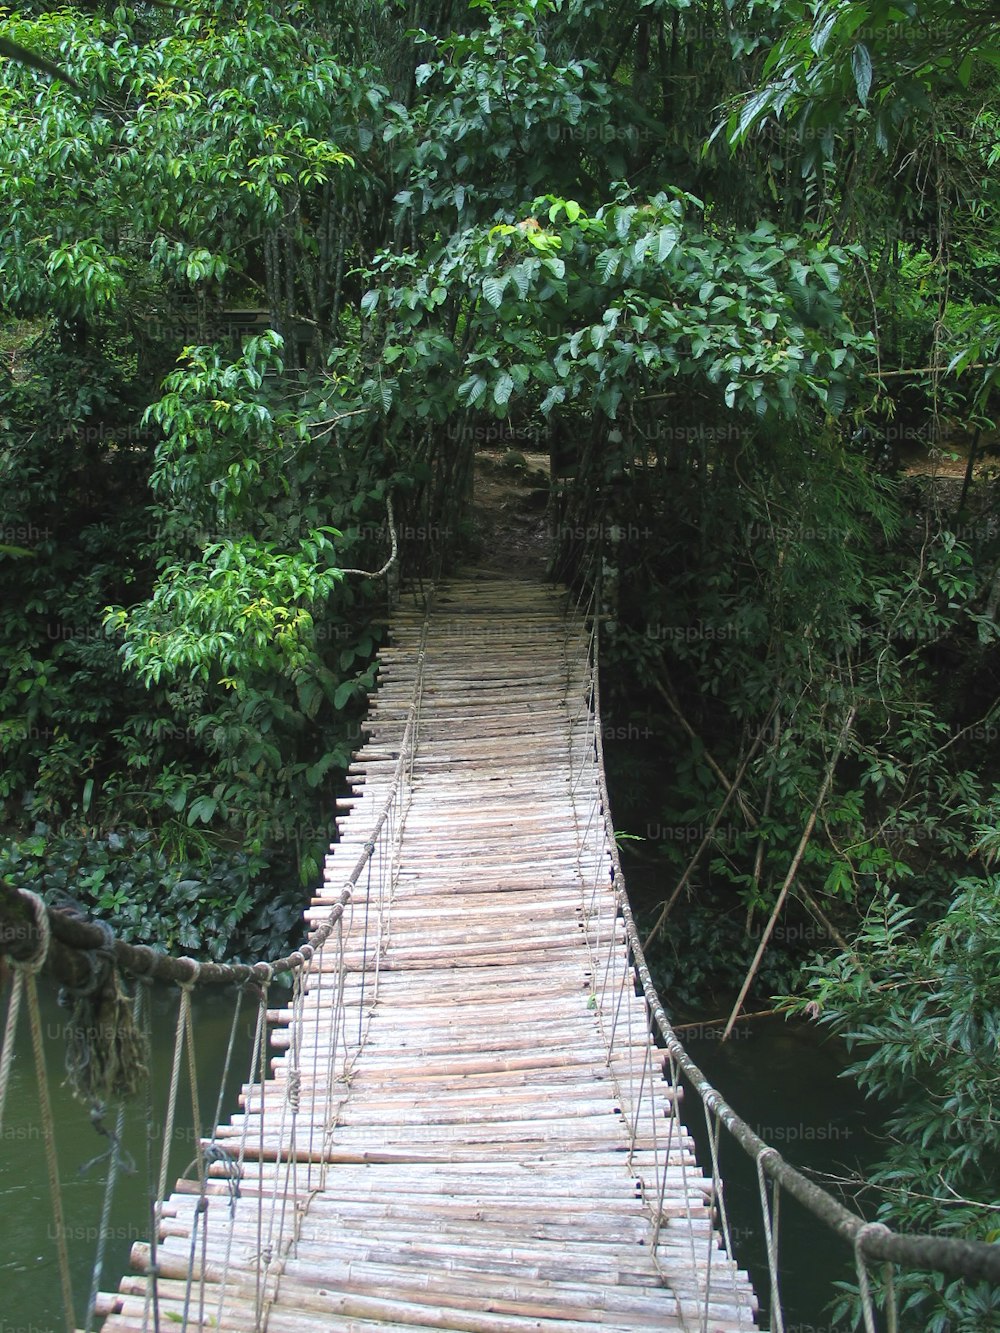 Un pequeño puente en la selva. Tailandia 2004